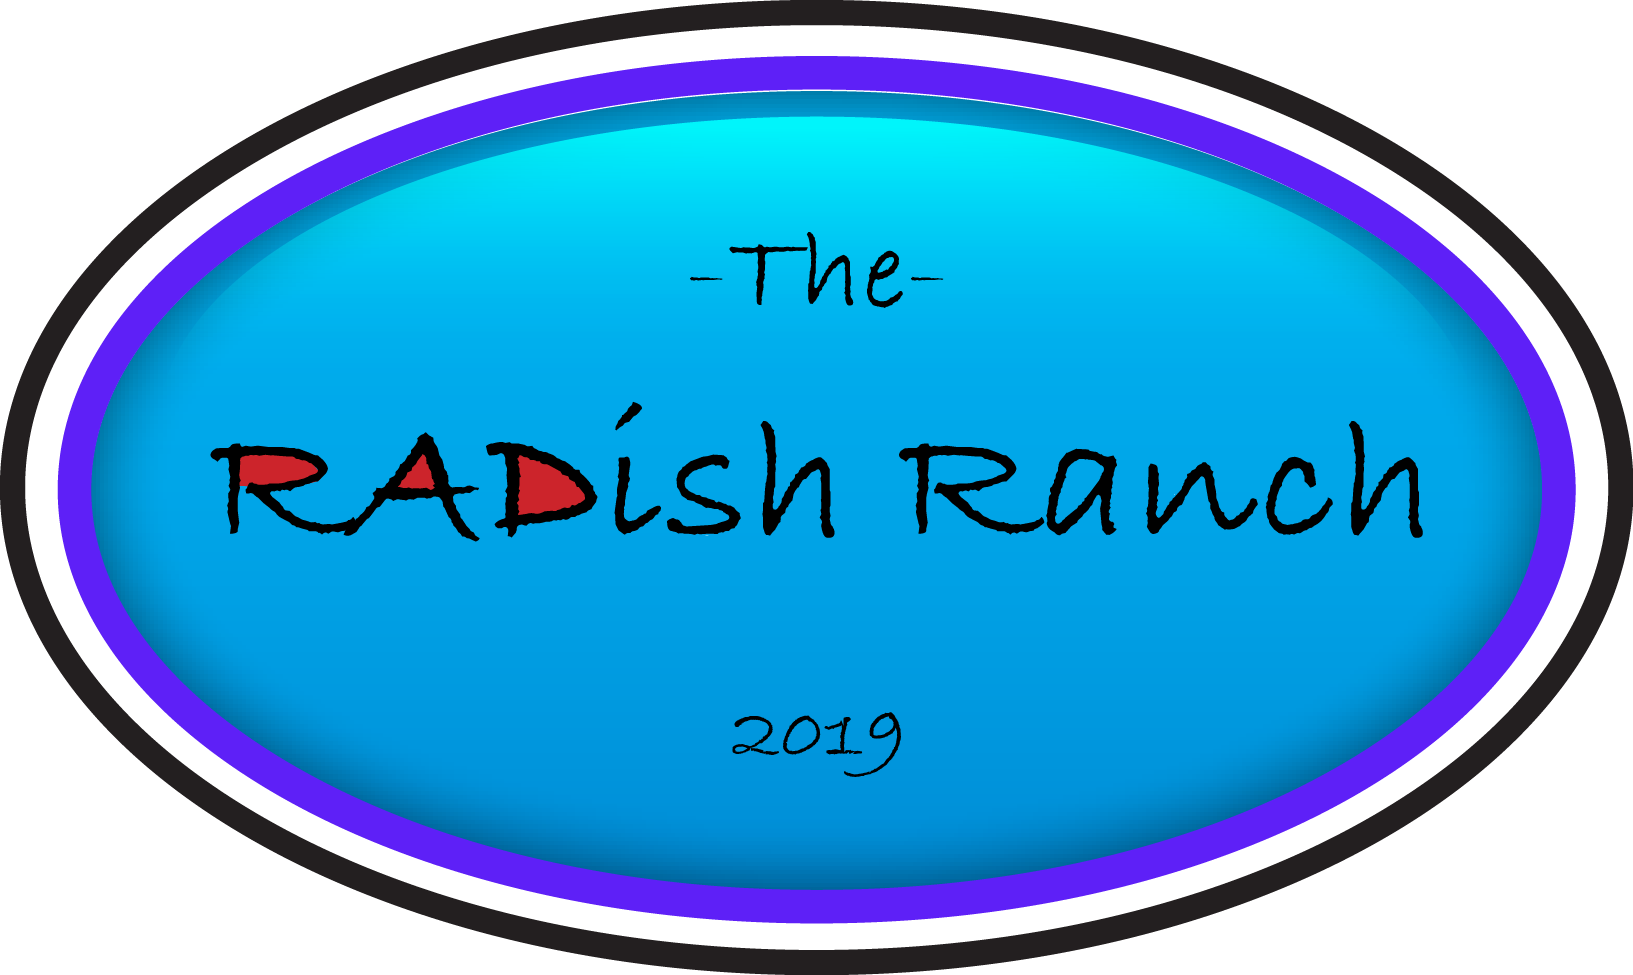 The Radish Ranch - The Radish Ranch (1633x975)